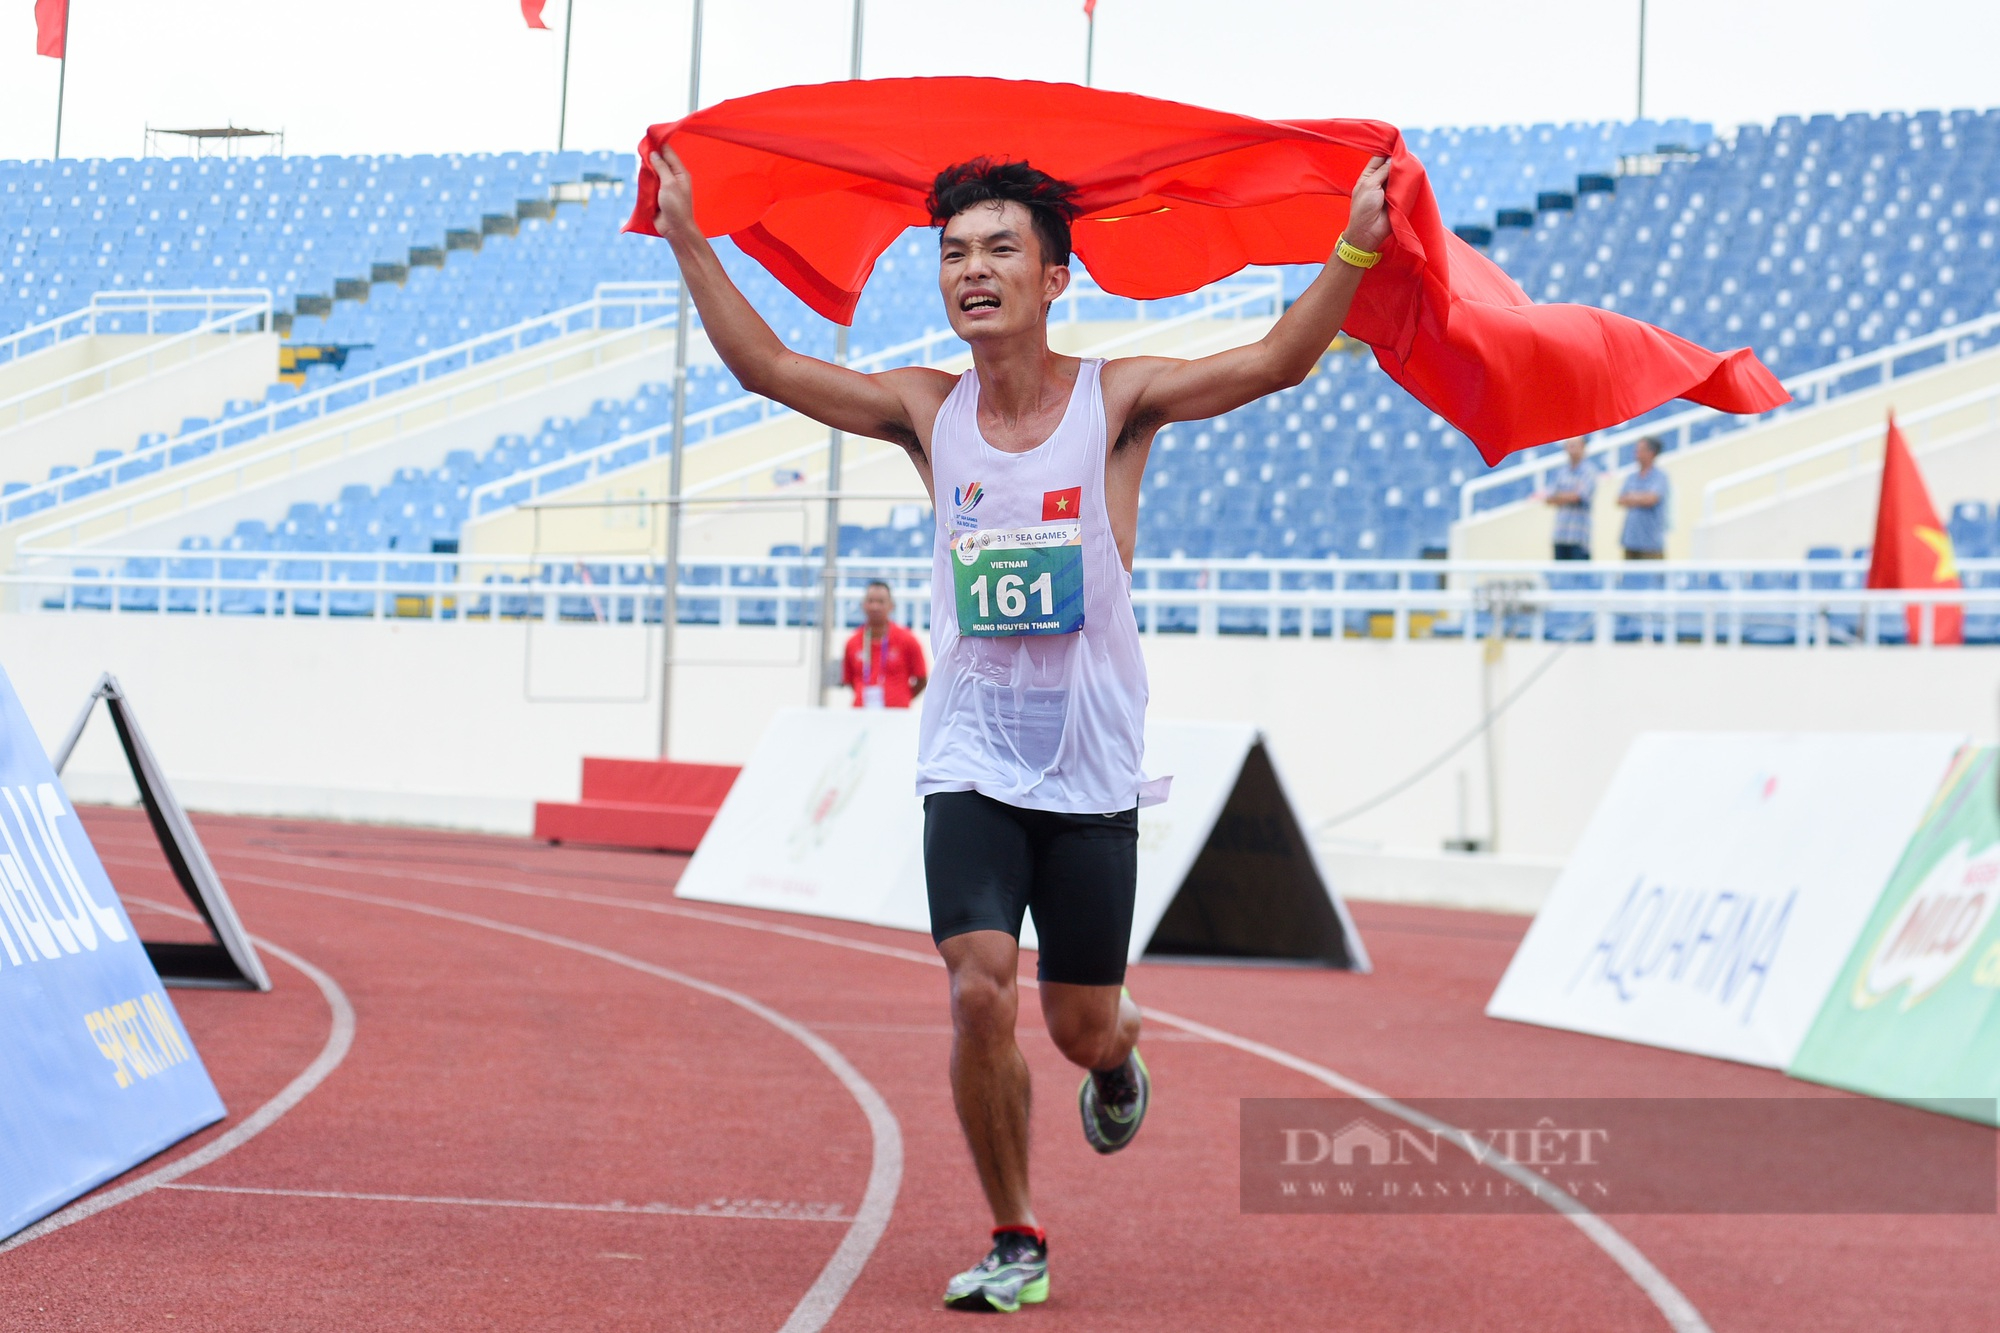 Hoàng Nguyên Thanh giành tấm HCV lịch sử cho marathon Việt Nam sau khi vượt qua 42,195km - Ảnh 5.